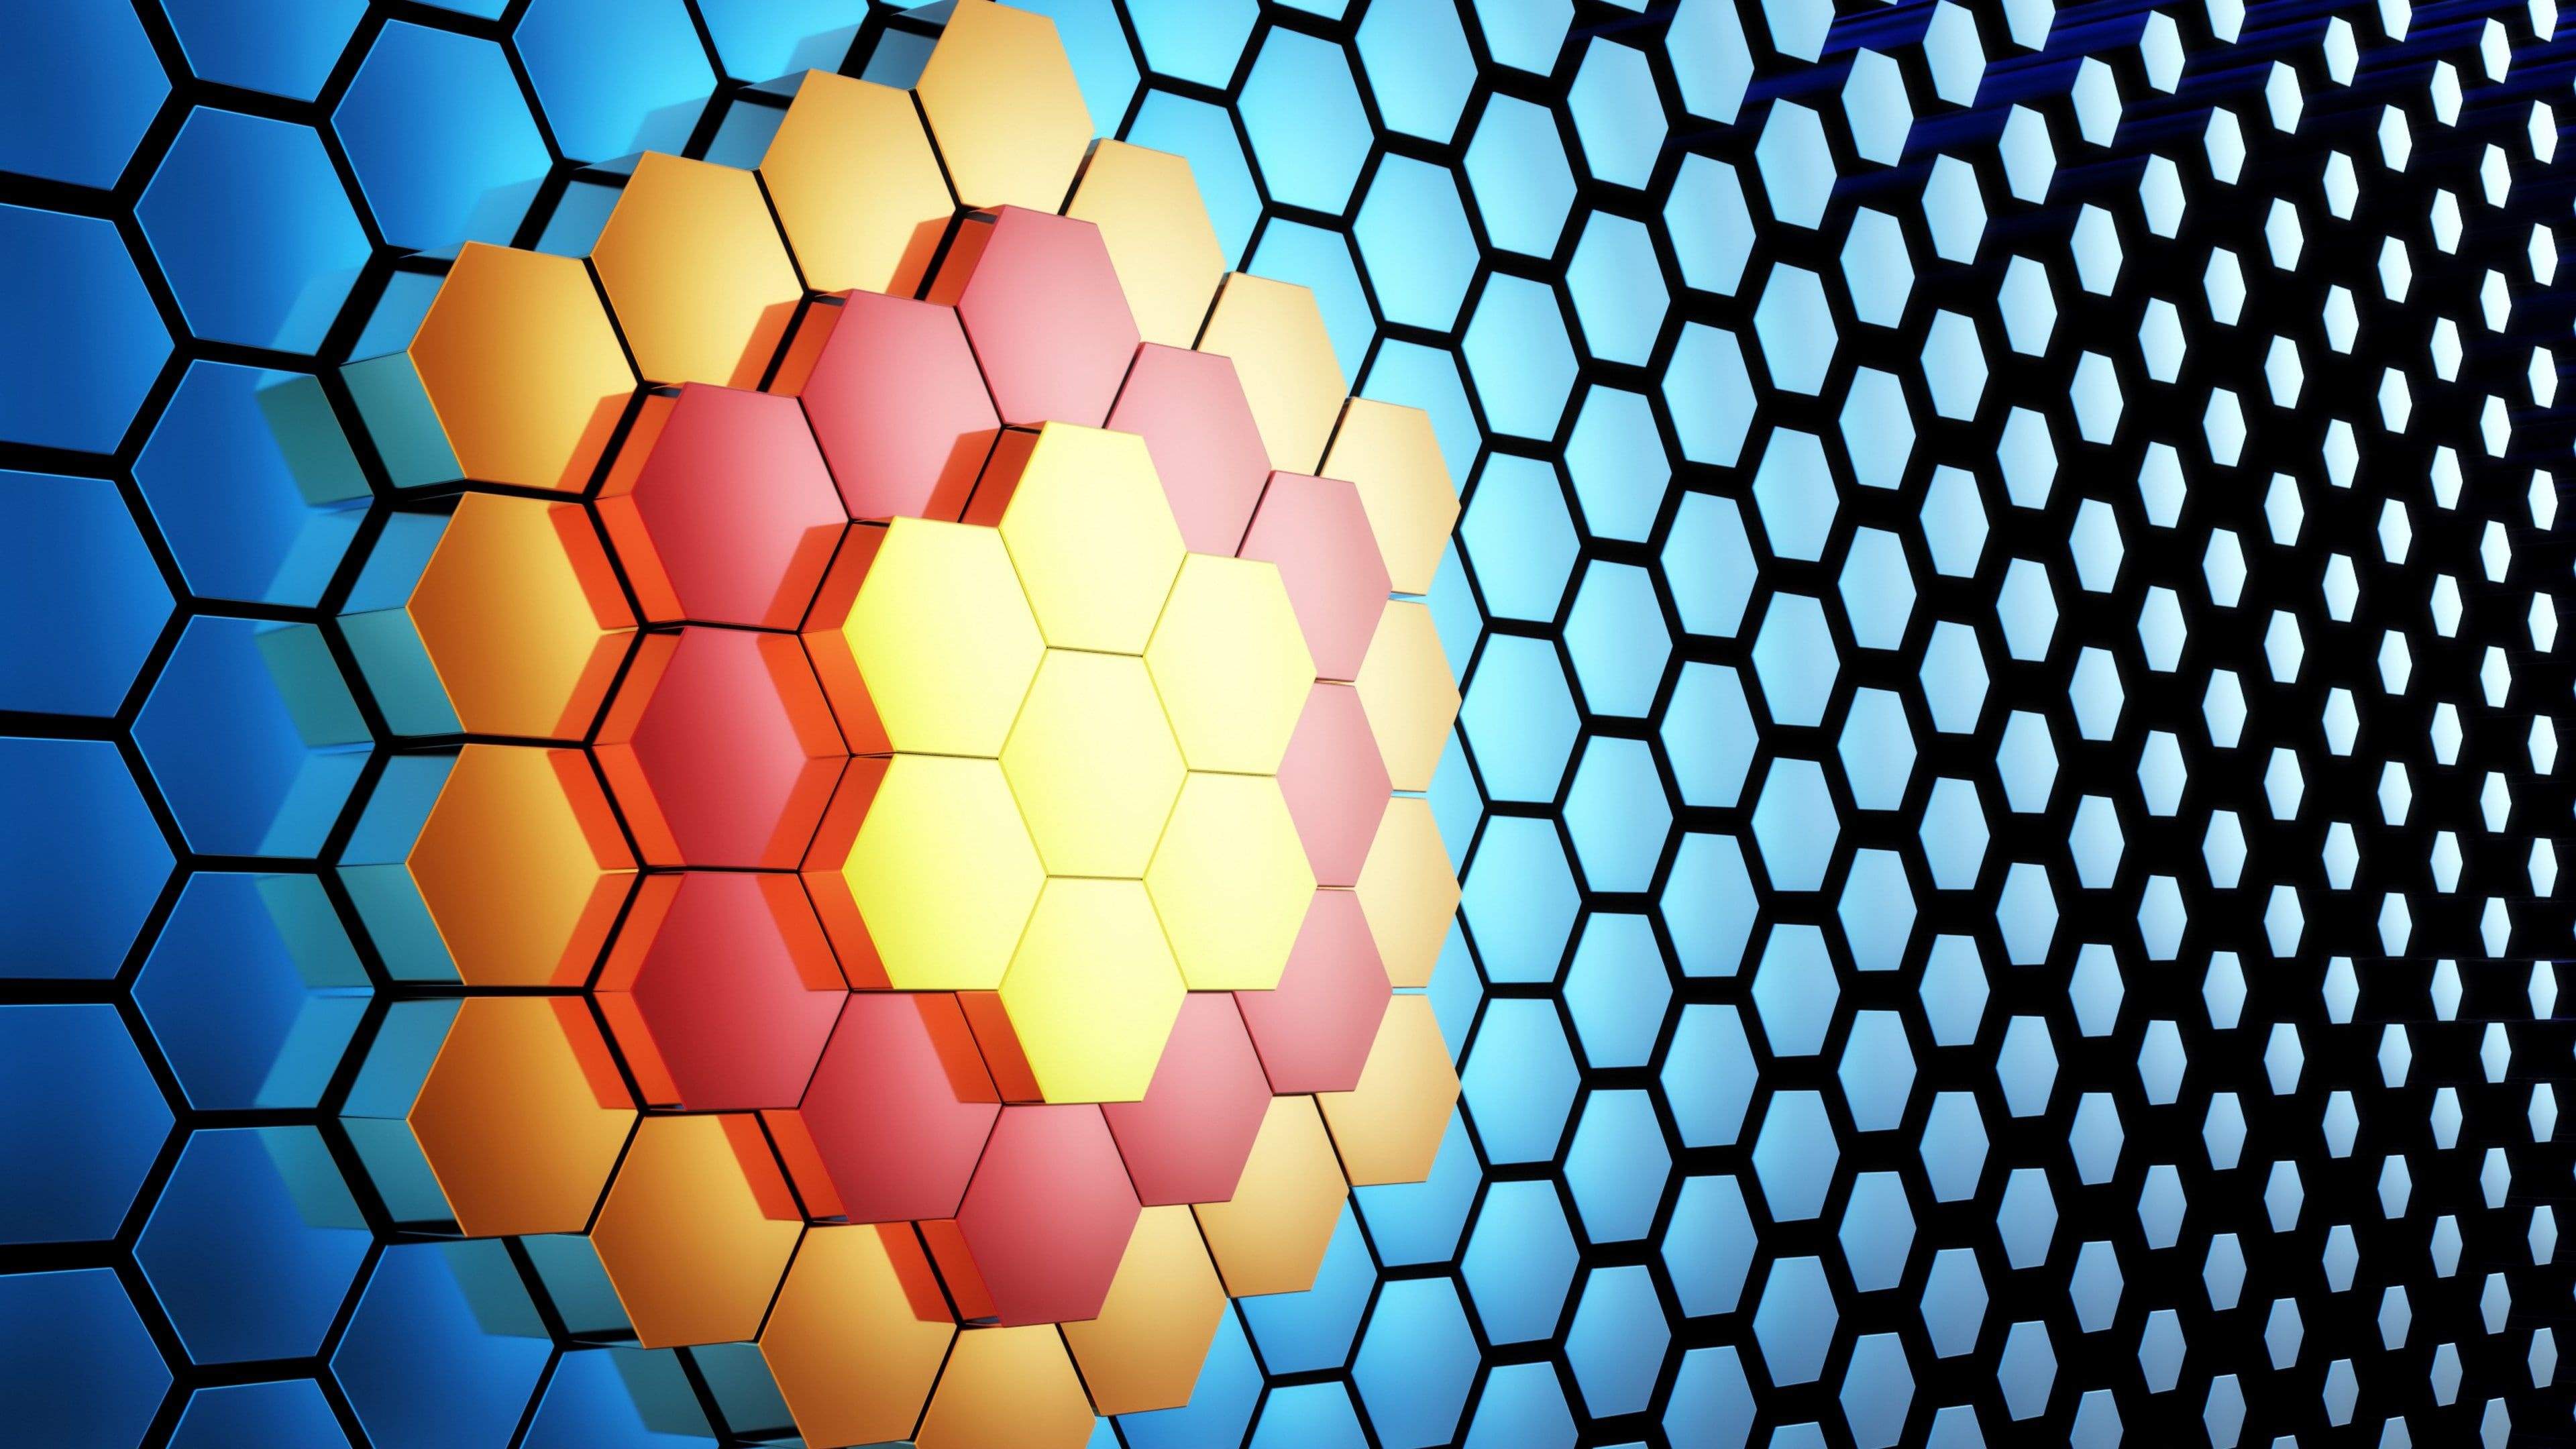 Honeycomb, Abstract art, 3D pattern, Hexagon design, 3840x2160 4K Desktop